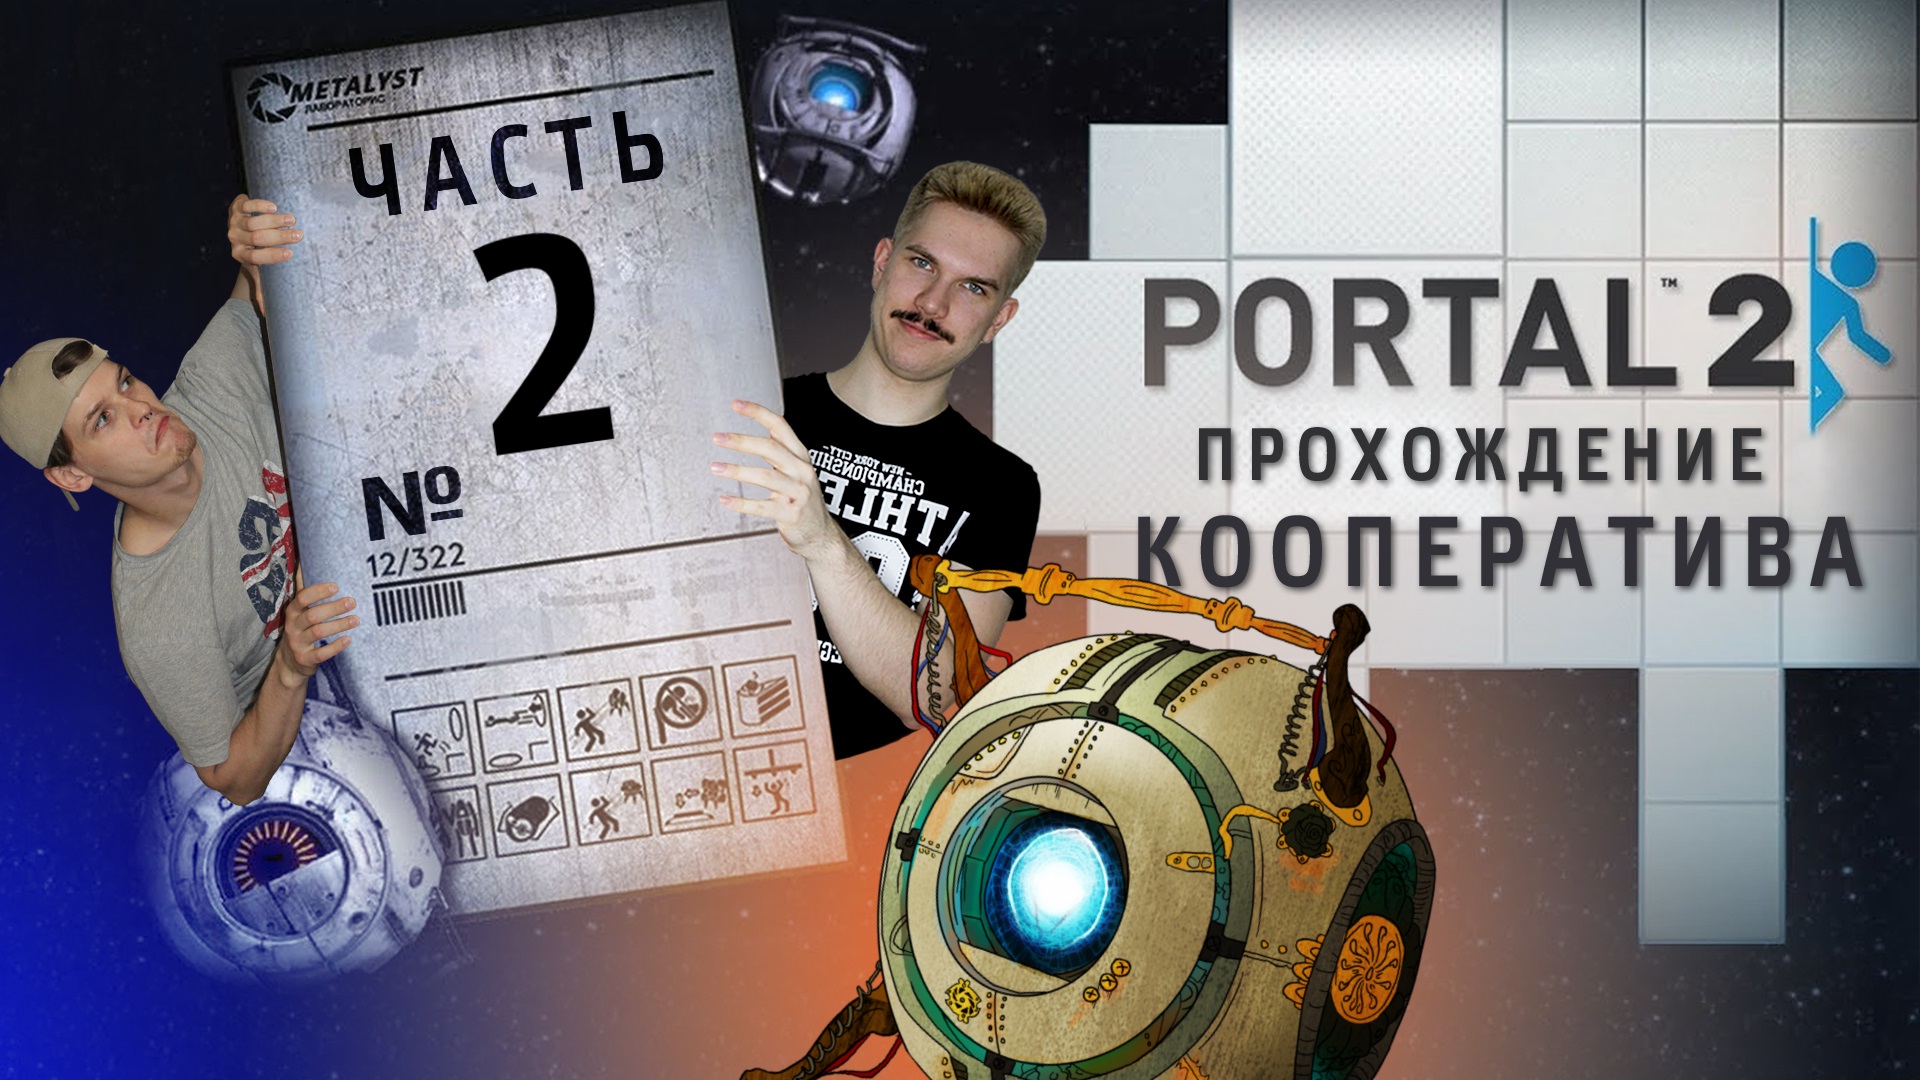 Portal 2 кооператив как пройти фото 26